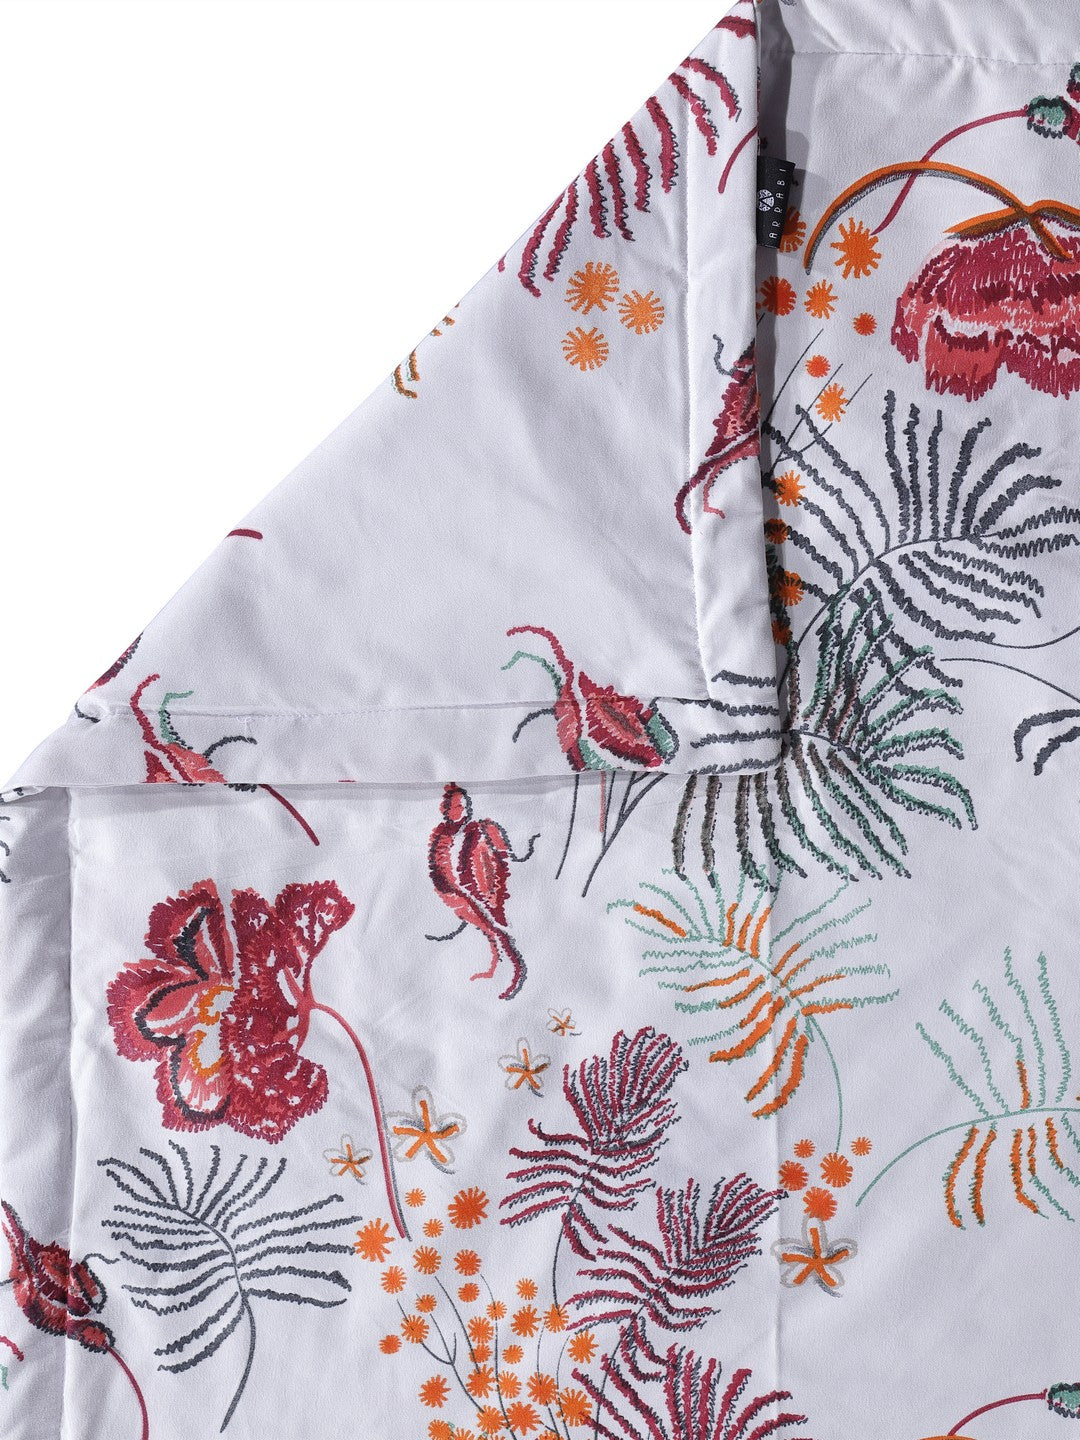 Arrabi Multi Floral TC Cotton Blend 350 GSM Double Size Comforter (240 x 215 cm)